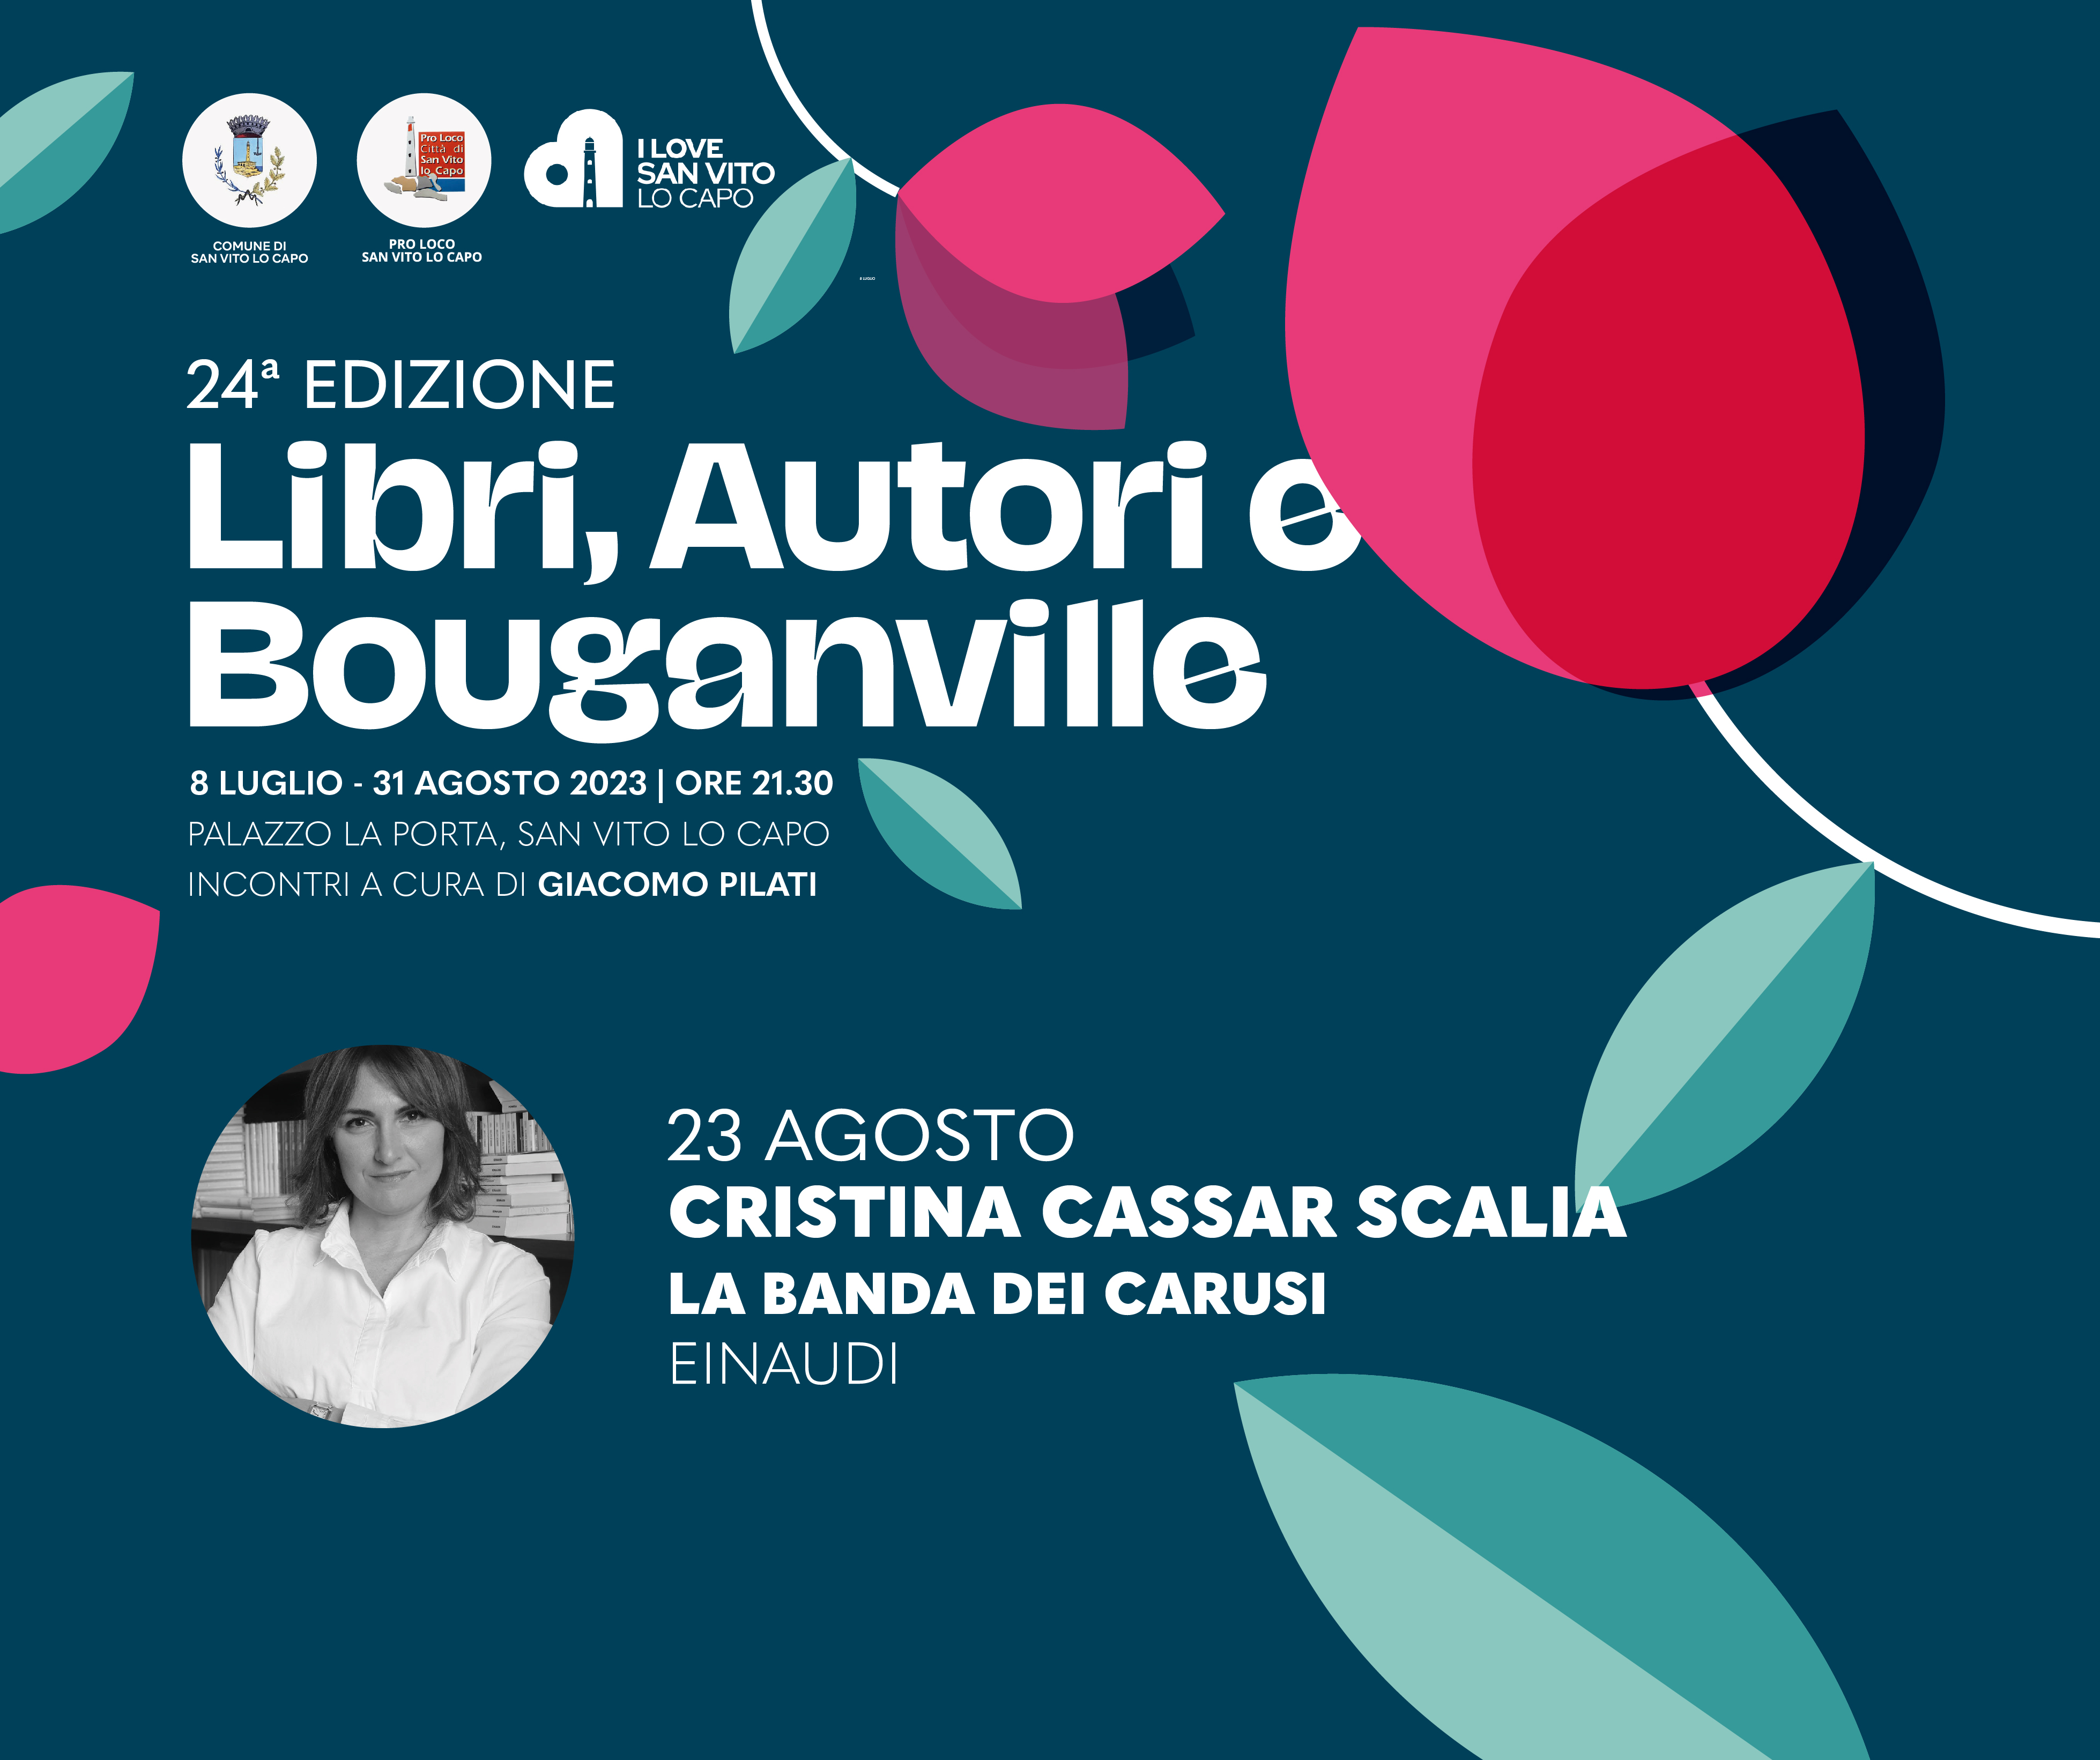 Mercoledì 23 agosto Cristina Cassar Scalia a Libri autori e bouganville 